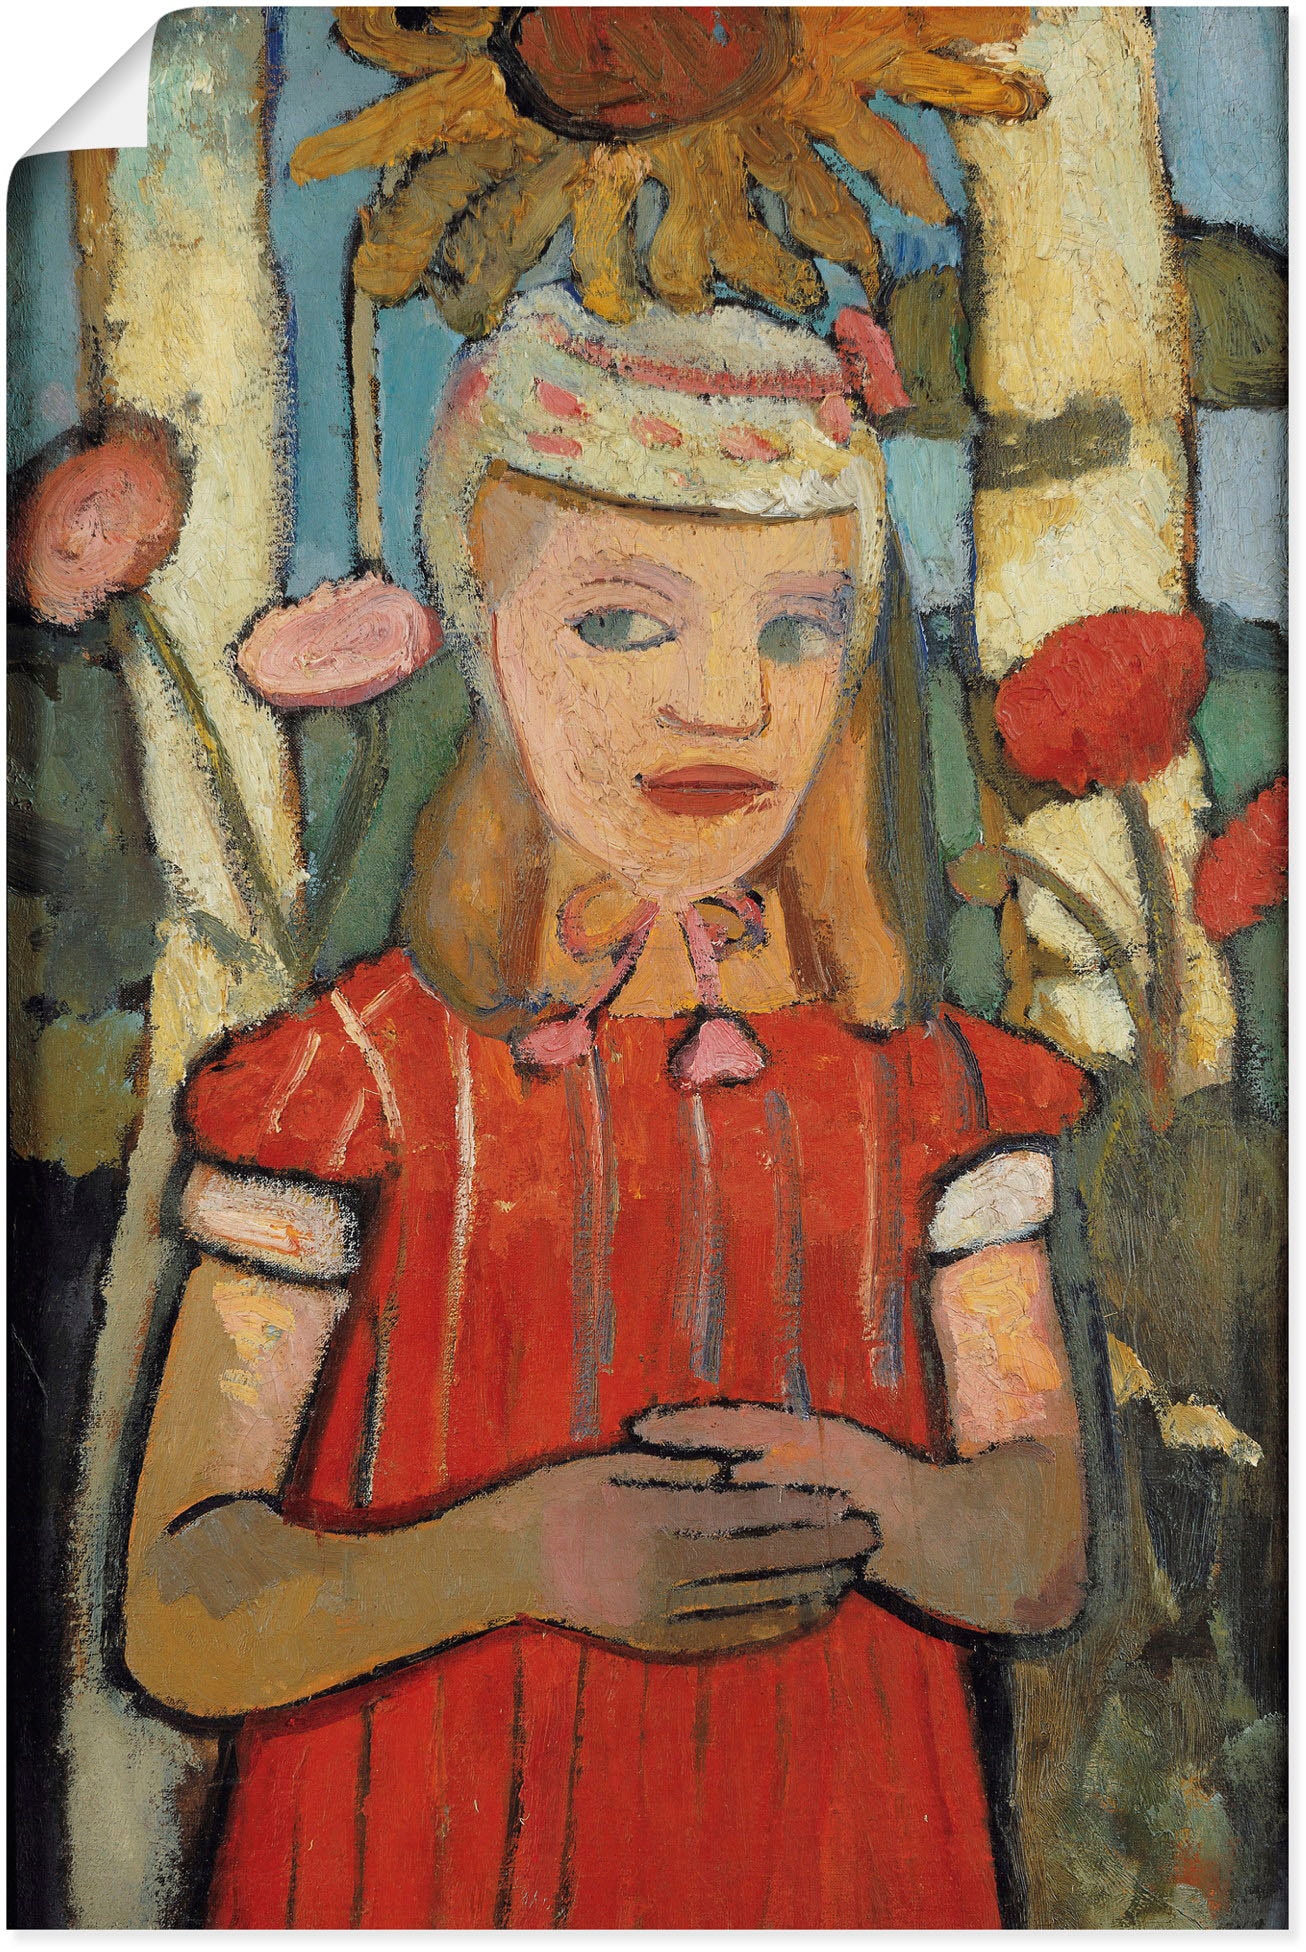 Artland Kunstdruck »Mädchen in rotem Kleid vor Sonnenblume.«, Bilder von Kindern, (1 St.), als Alubild, Leinwandbild, Wandaufkleber oder Poster in versch. Grössen